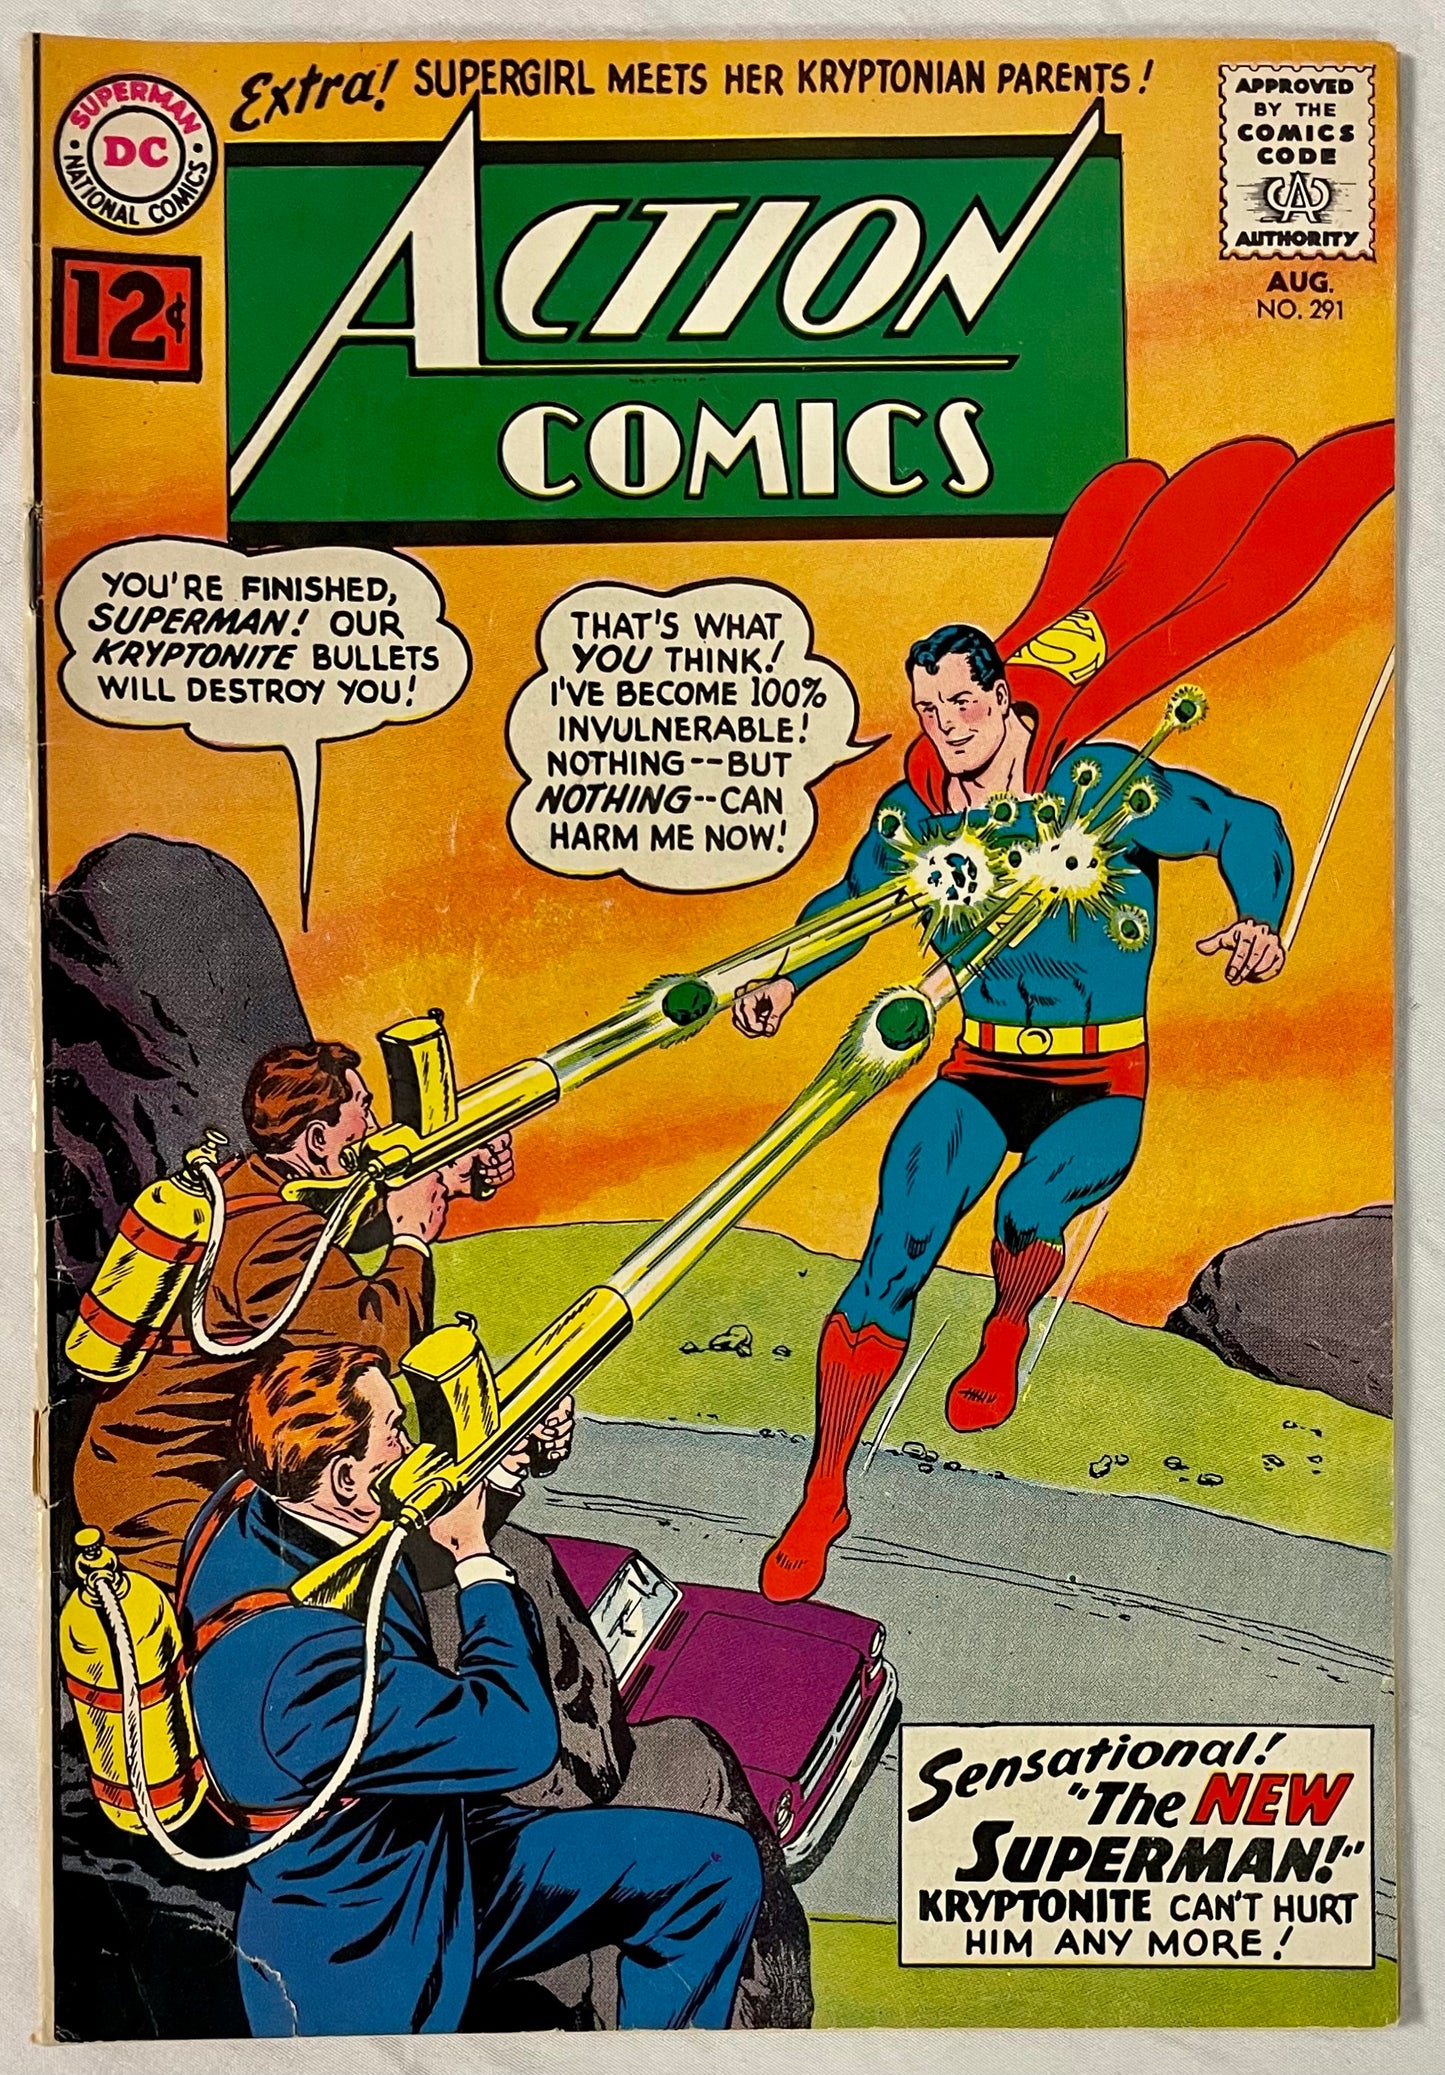 DC Comics Action Comics No. 291